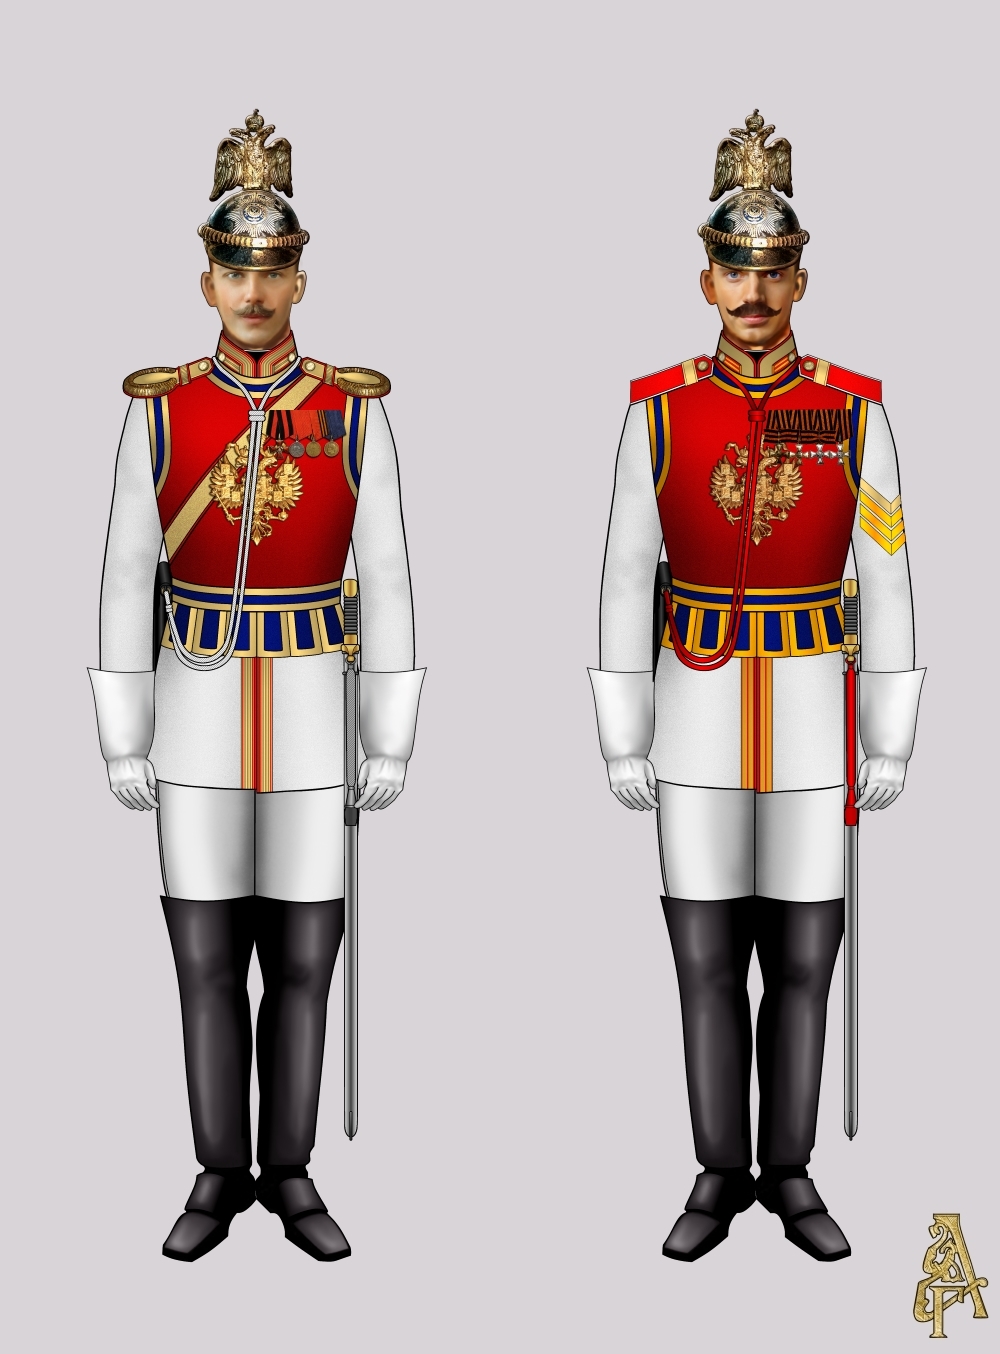 Придворная форма Лейб-гвардии Конного полка (Рис. 3, 4)